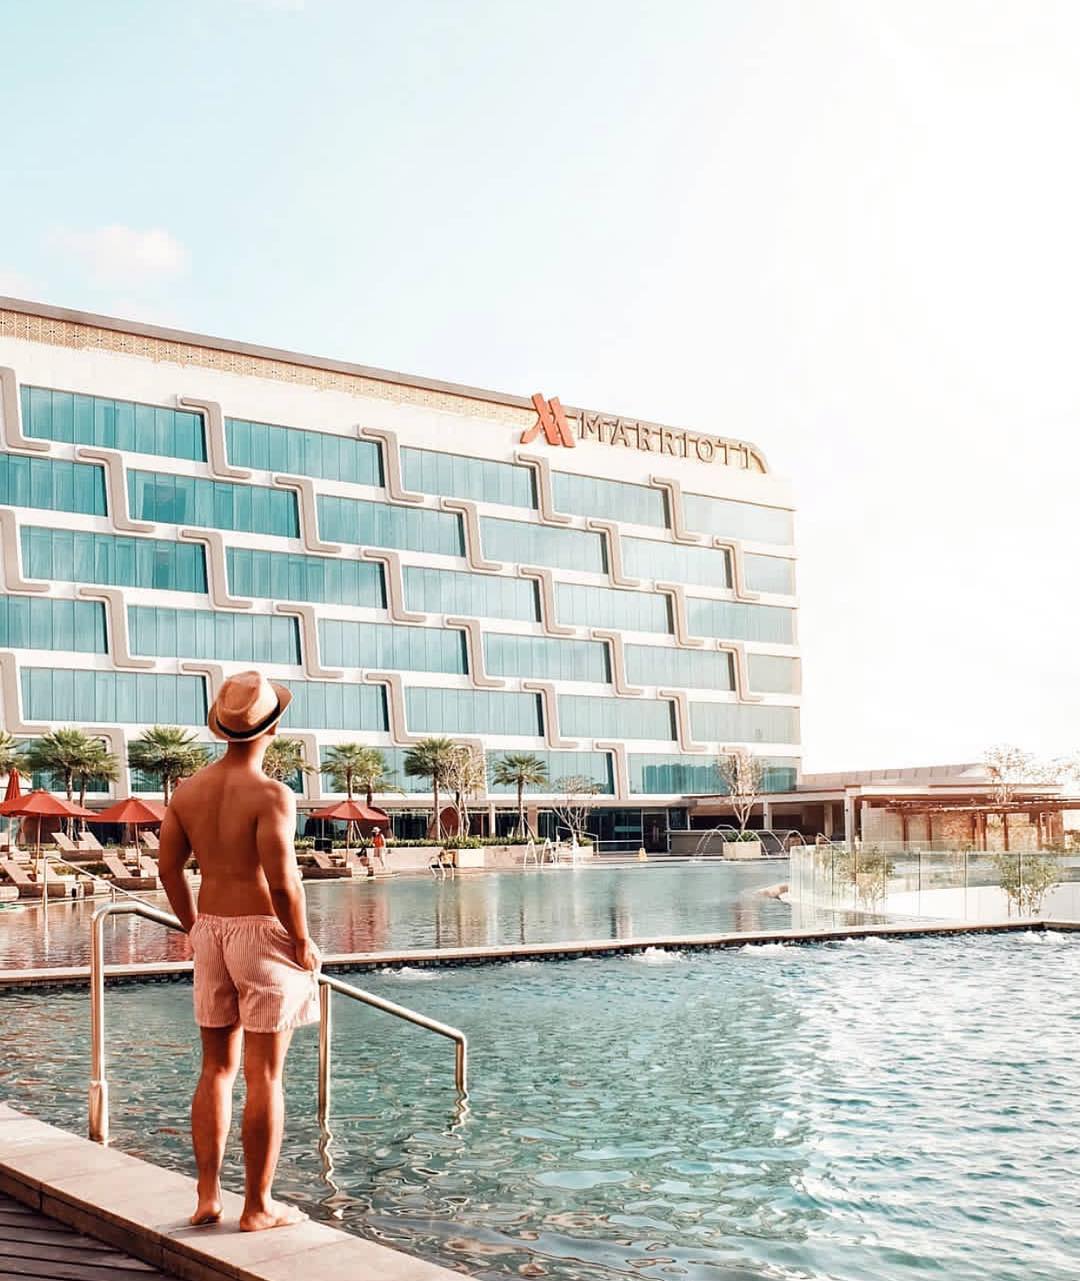 Yogyakarta Marriott Hotel